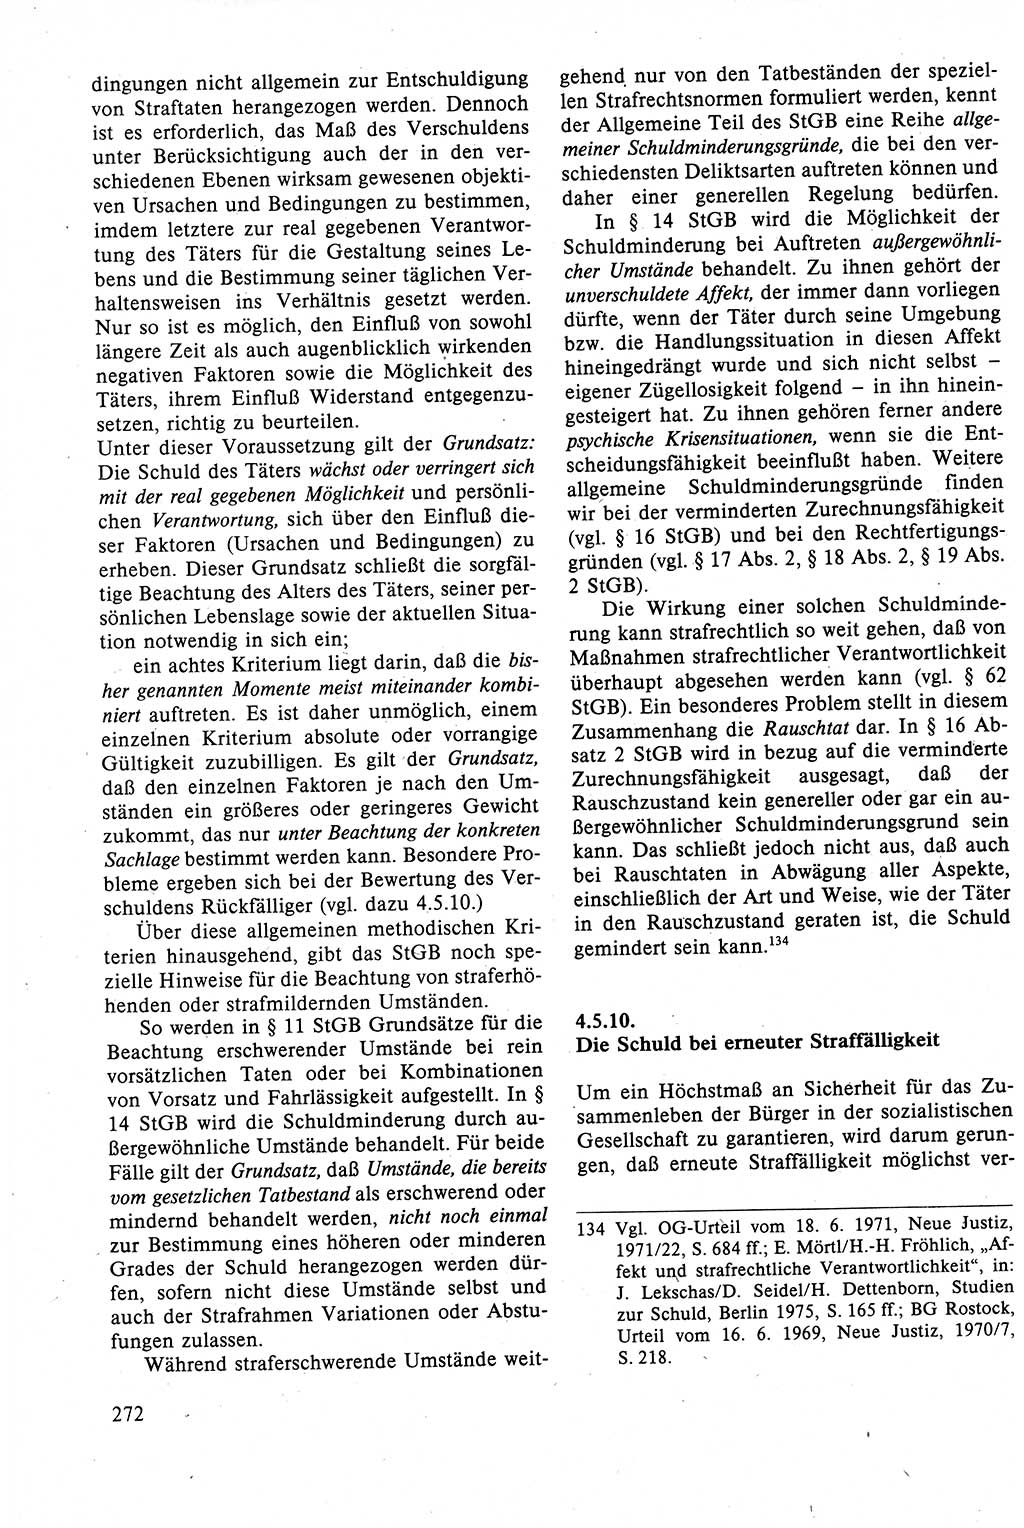 Strafrecht der DDR (Deutsche Demokratische Republik), Lehrbuch 1988, Seite 272 (Strafr. DDR Lb. 1988, S. 272)